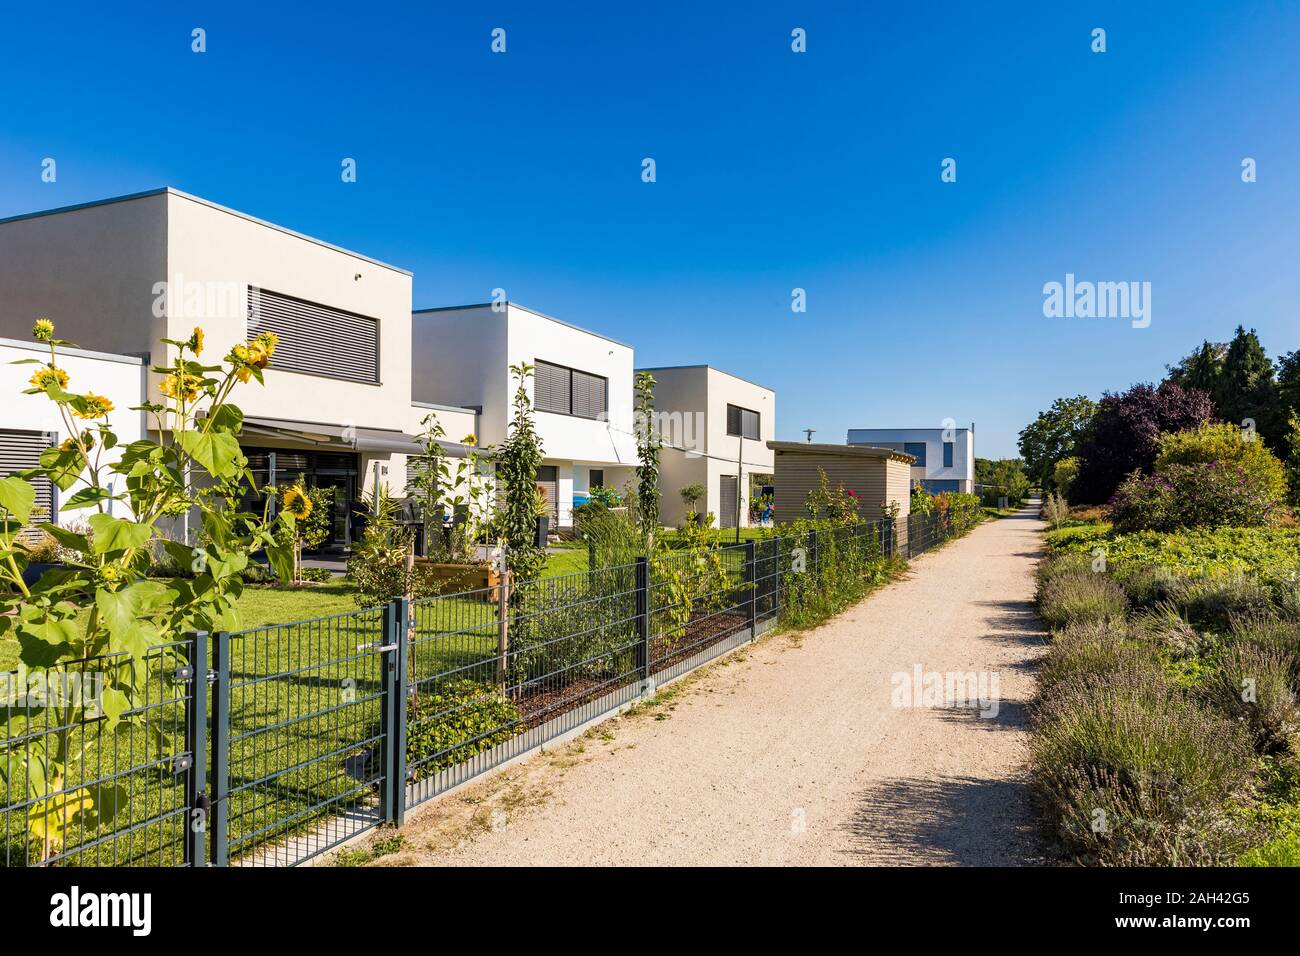 Alemania, Baviera, Neu-Ulm, camino de tierra a lo largo de la fila de suburbio casas Foto de stock